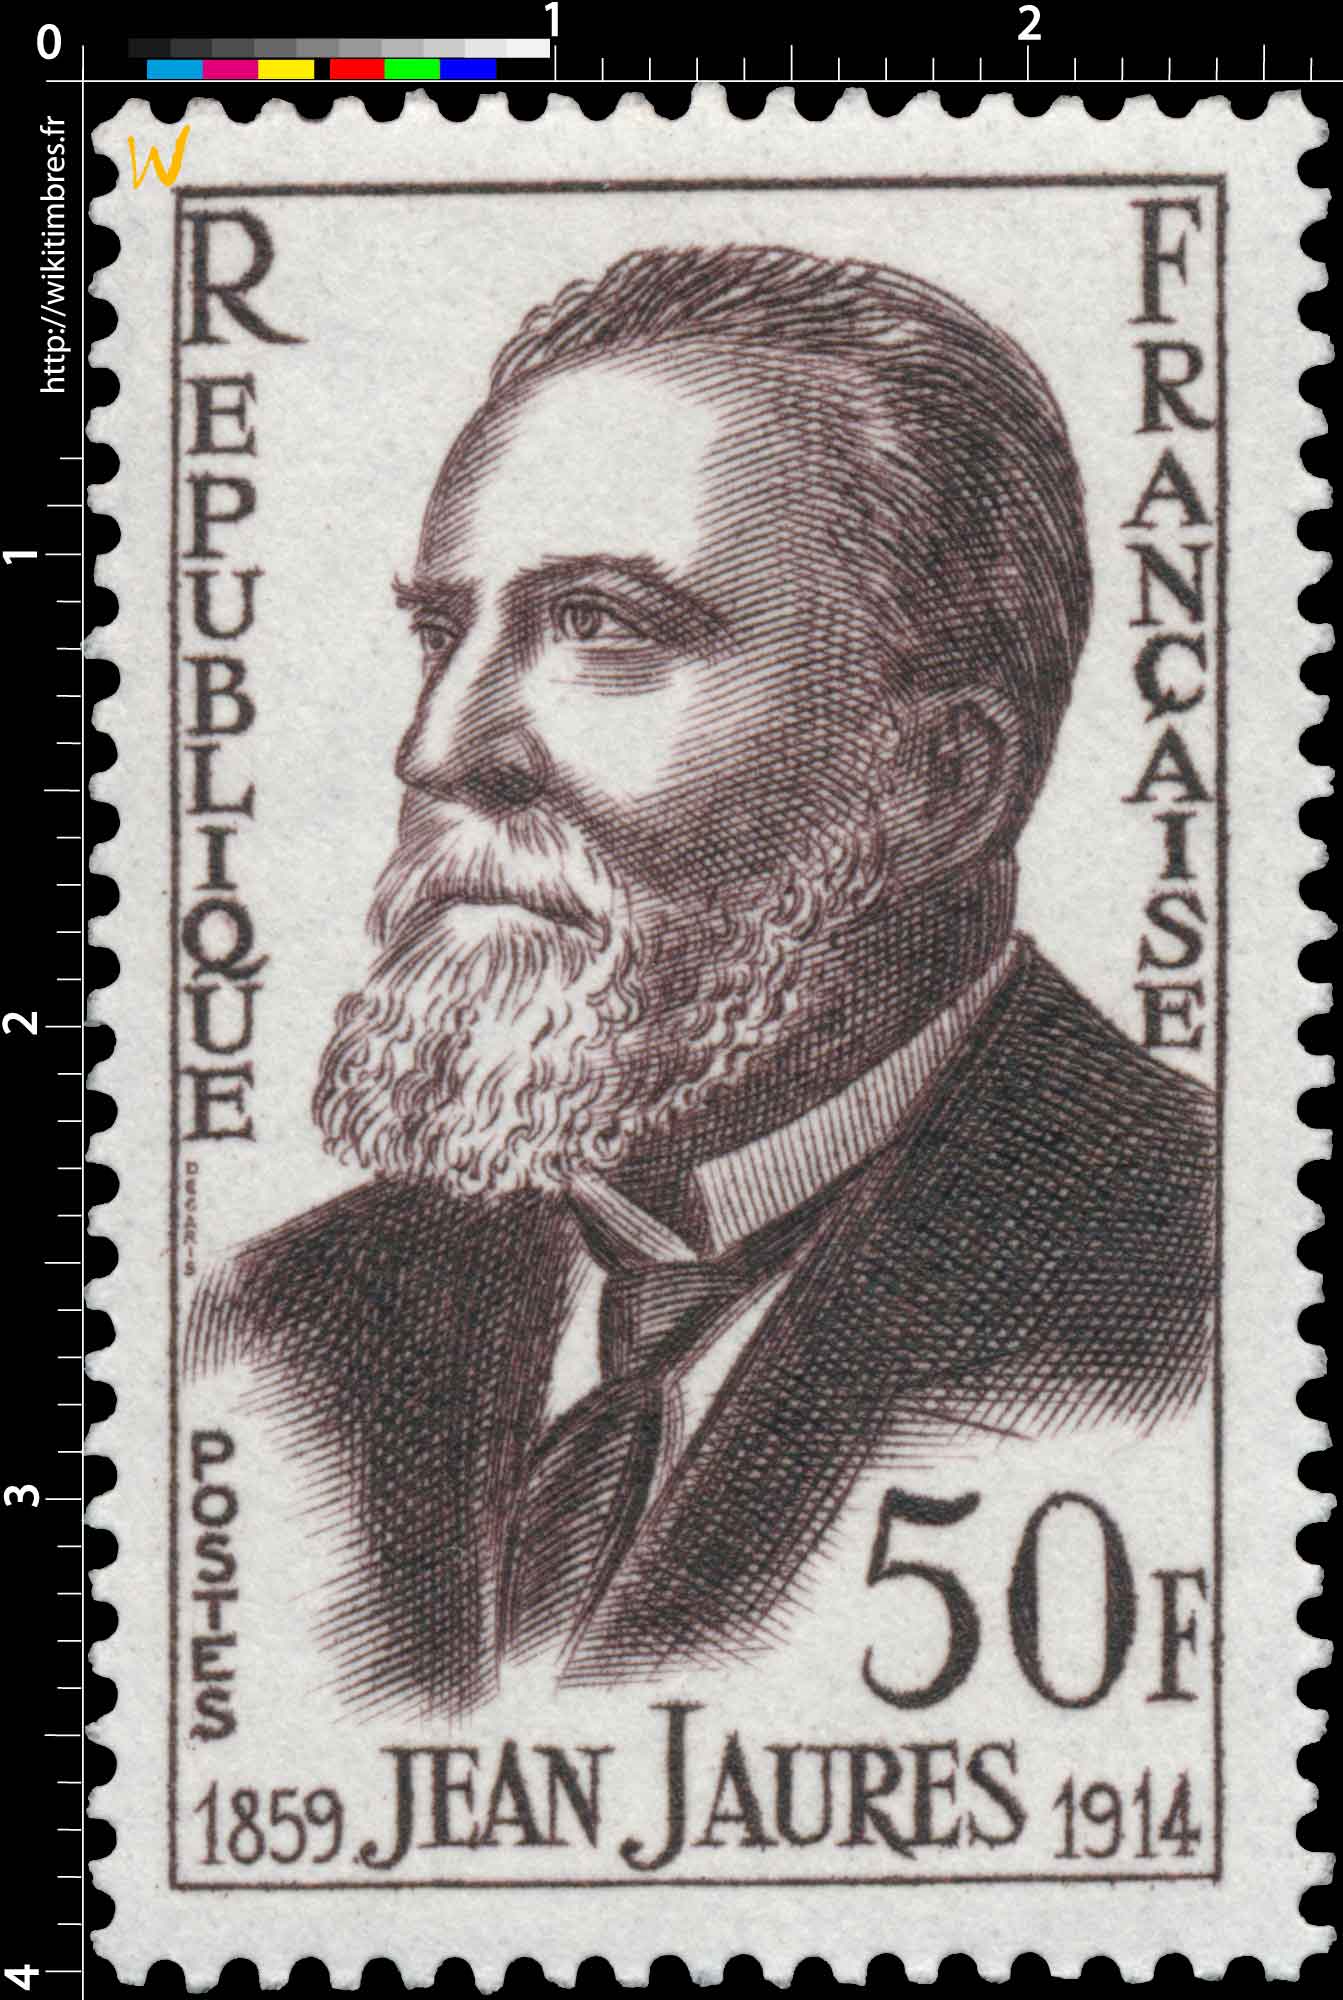 JEAN JAURÈS 1859-1914